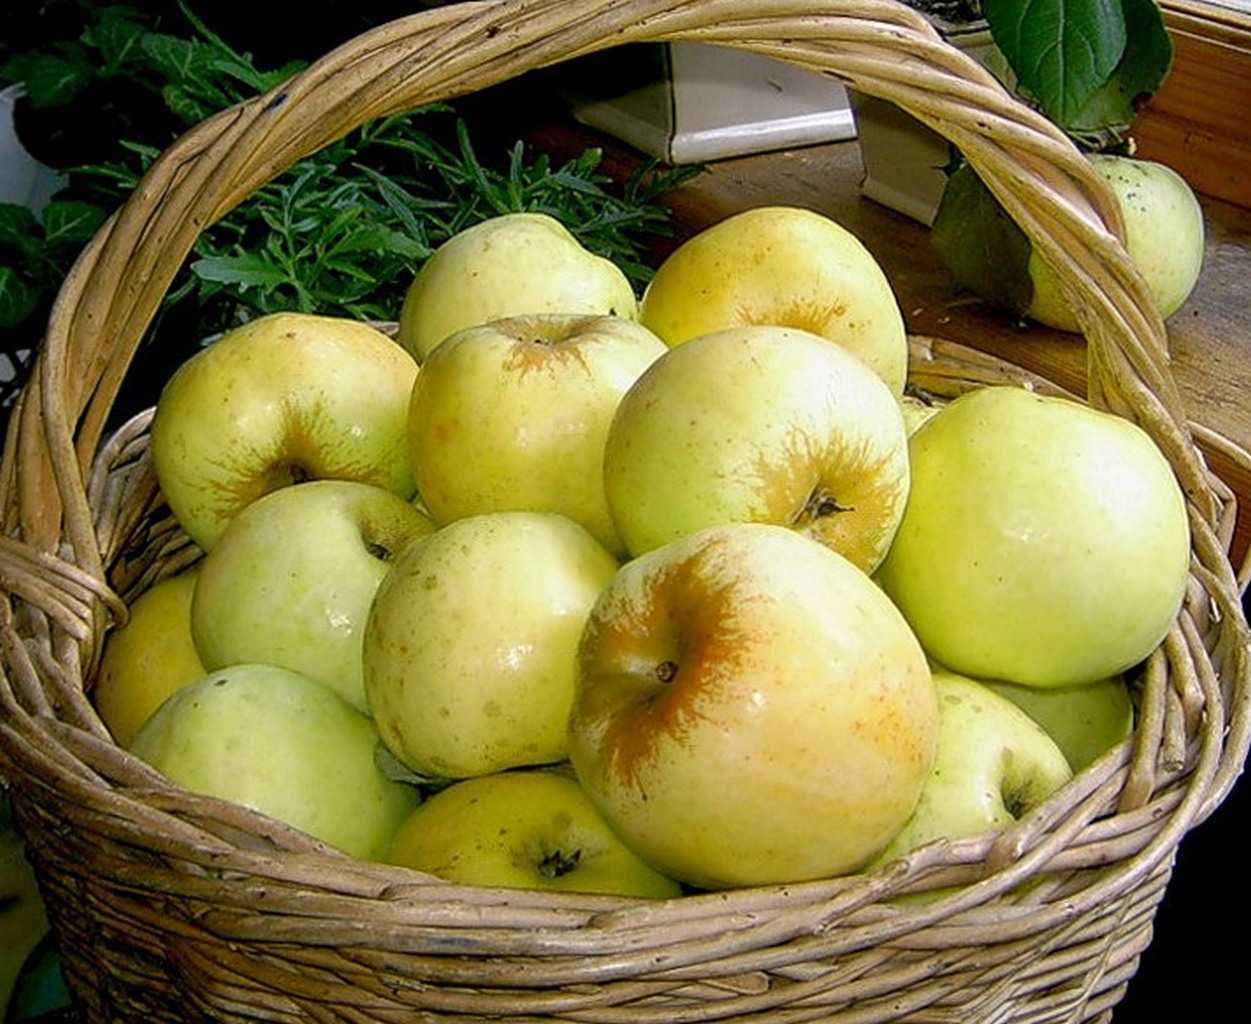 Ароматное яблоко белый налив: описание и фото сорта, особенности выращивания и другие нюансы